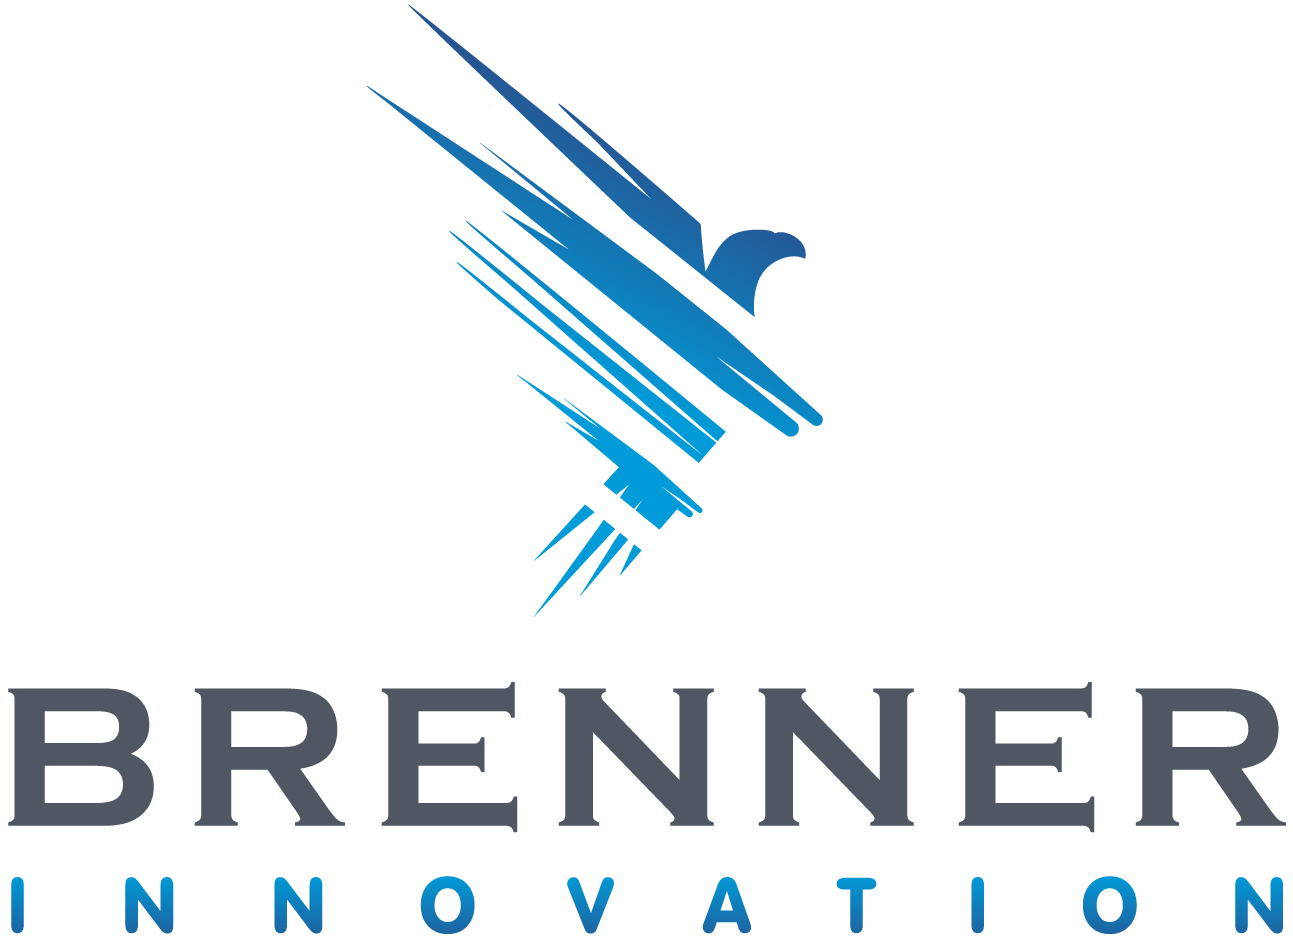 Brenner Innovation